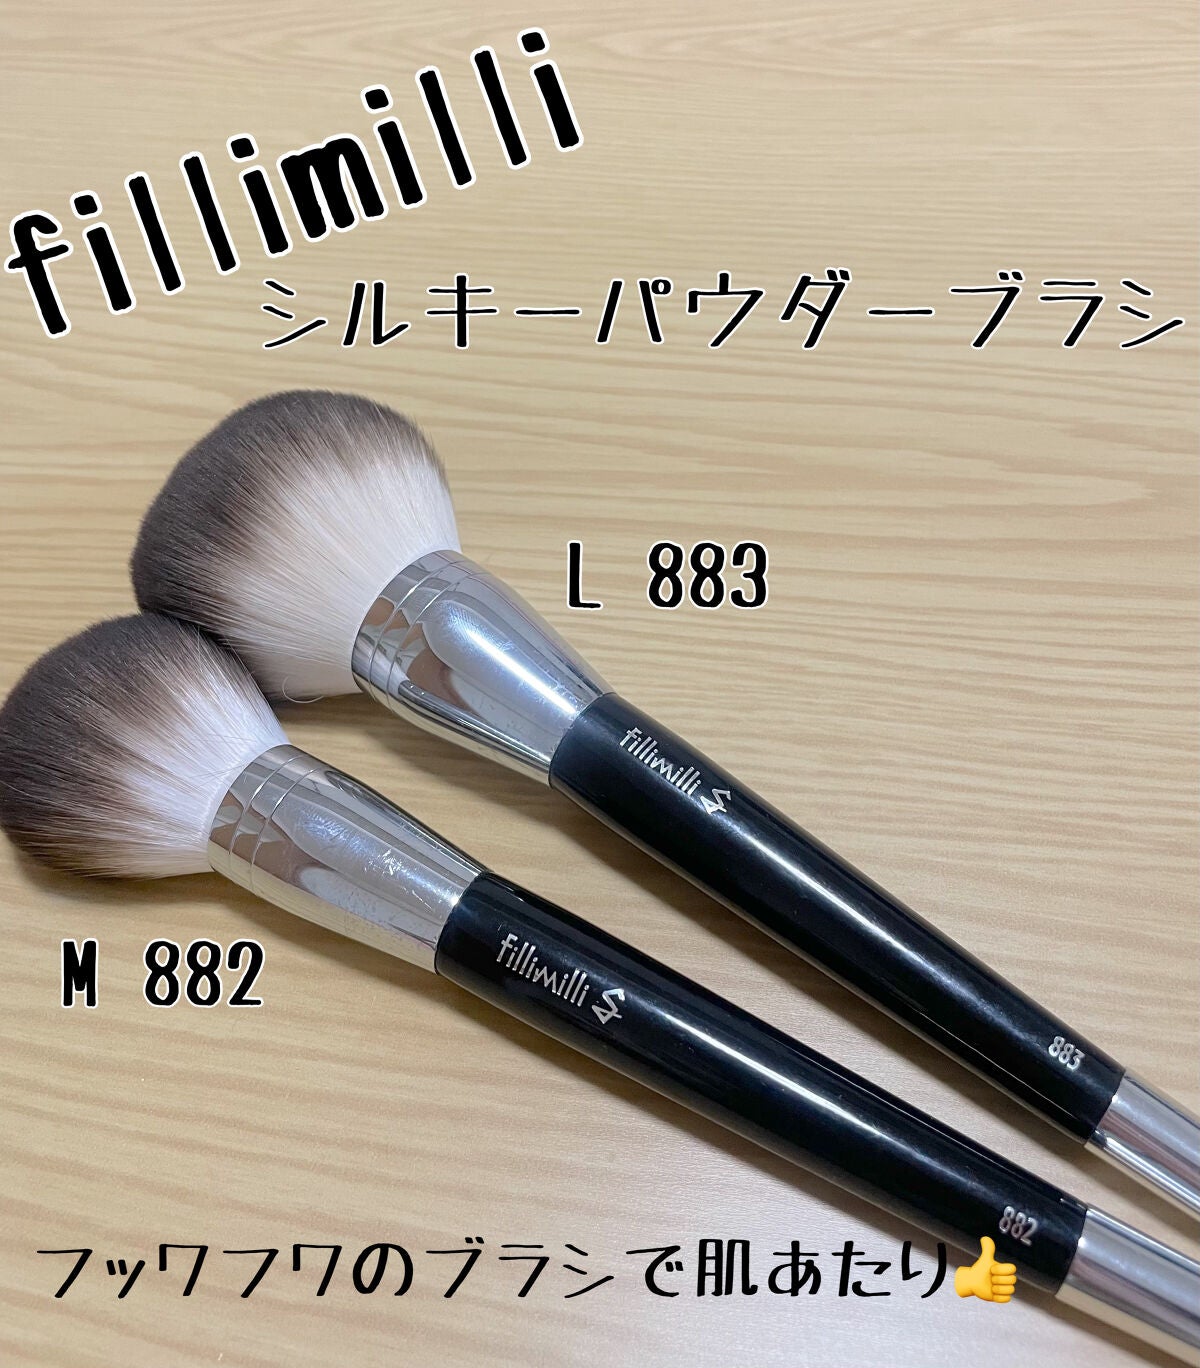 【FilliMilli】Sシルキーパウダーブラシ (L) 883 ＆(M)882